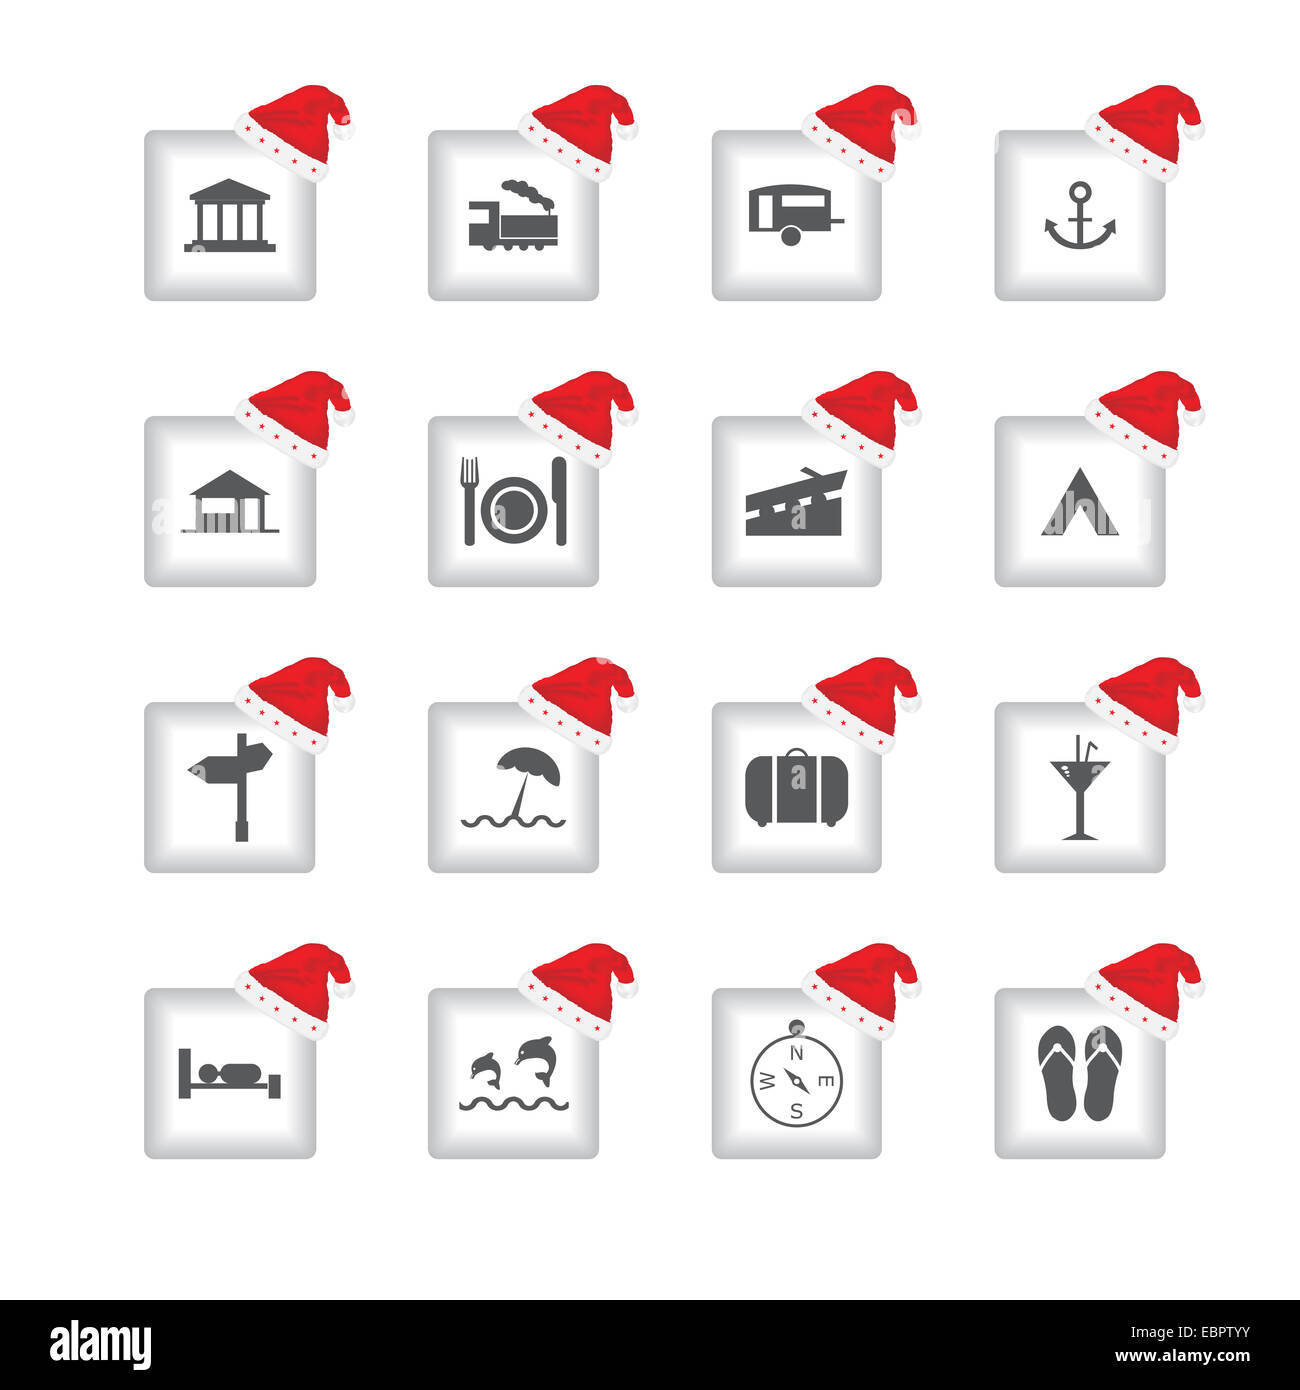 Les icônes de l'interface utilisateur plat spécial avec Noël conception pour des applications web et mobiles Banque D'Images